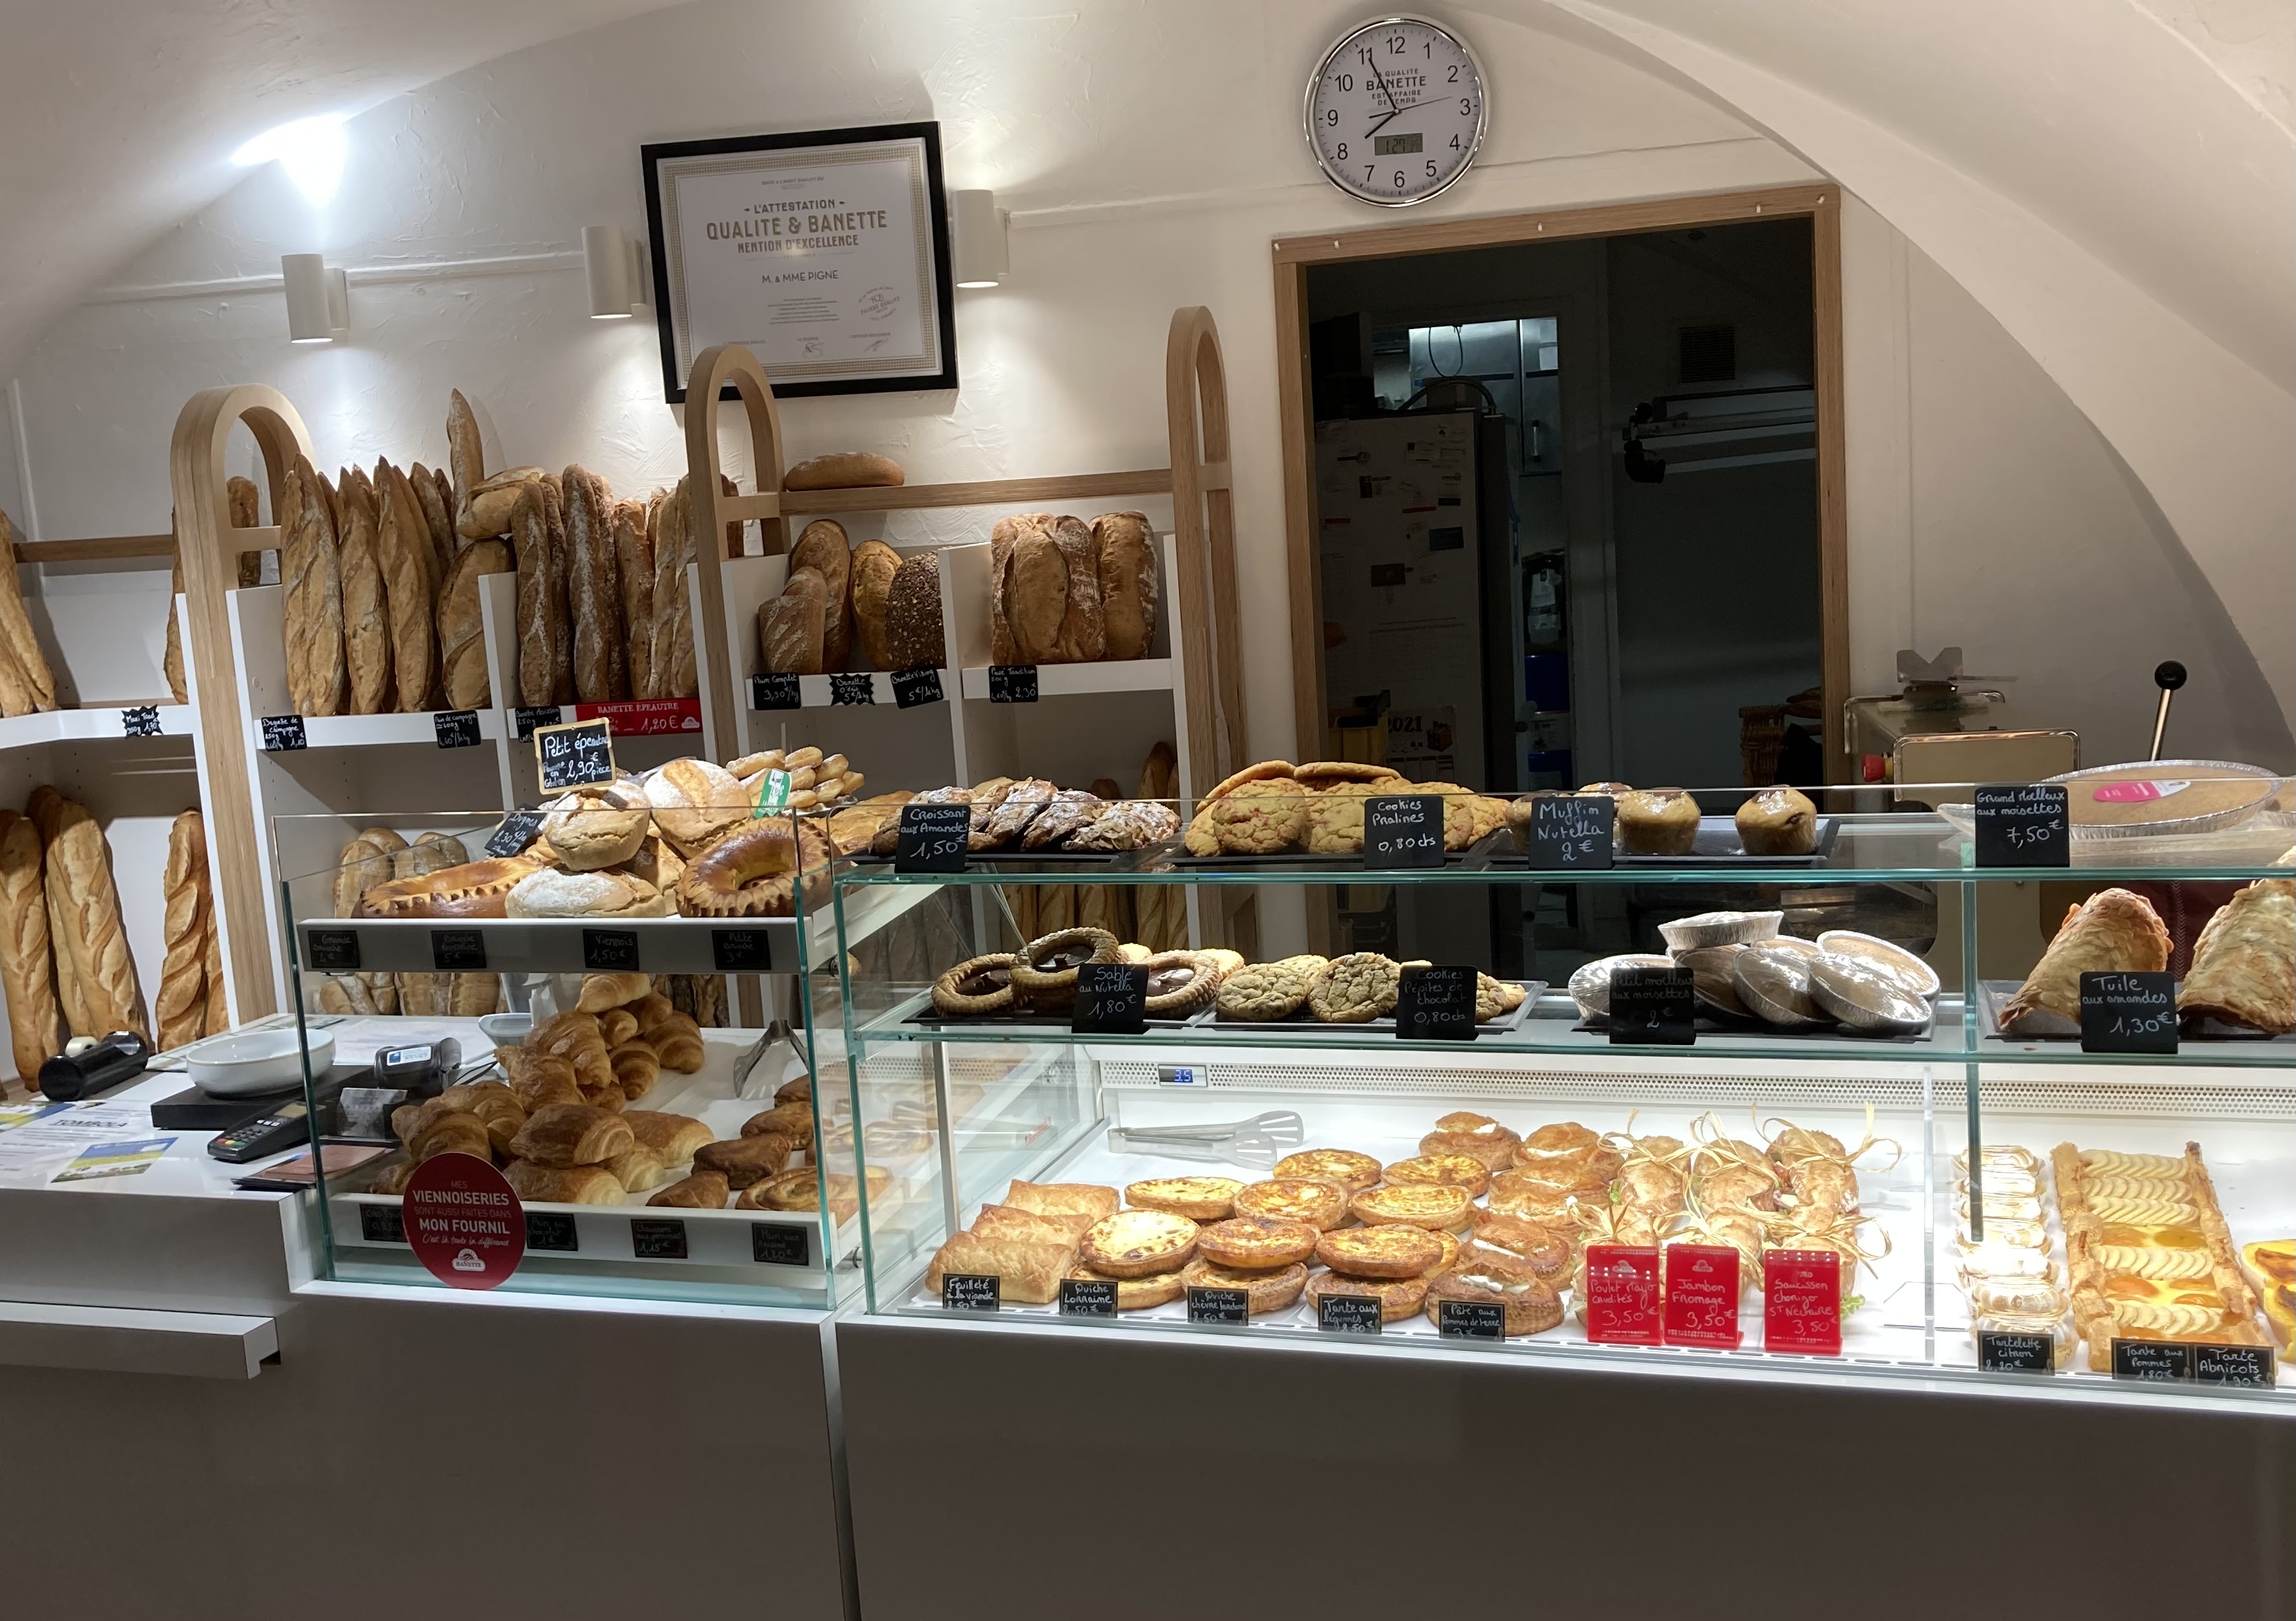 Boulangerie pâtisserie au cœur d un village de 3000 habitants avec toutes commodité et services.
A 10min de Clermont Ferrand.
Magasin refait fin 2019 
Matériel pâtisserie et boulangerie récent .